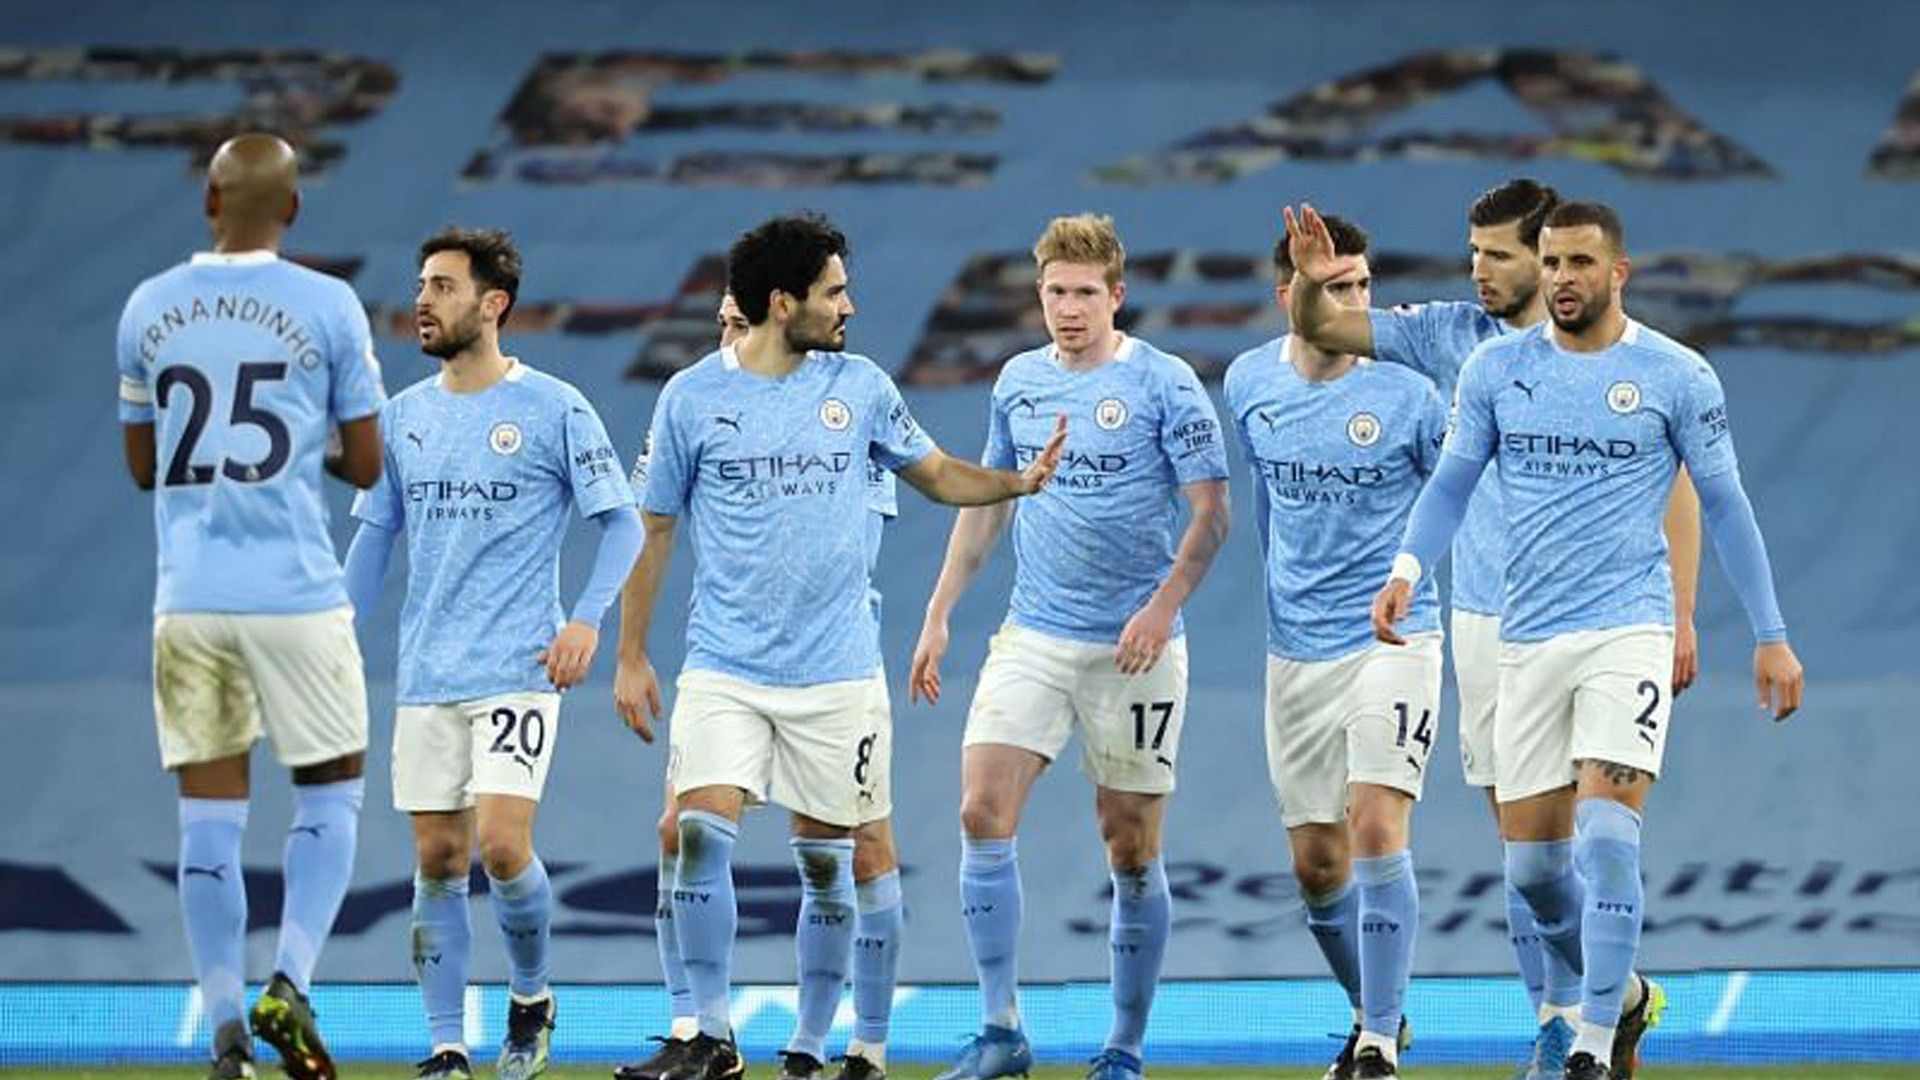 Players HD Manchester City Vs Southampton Wallpaper</a> Wallpaper